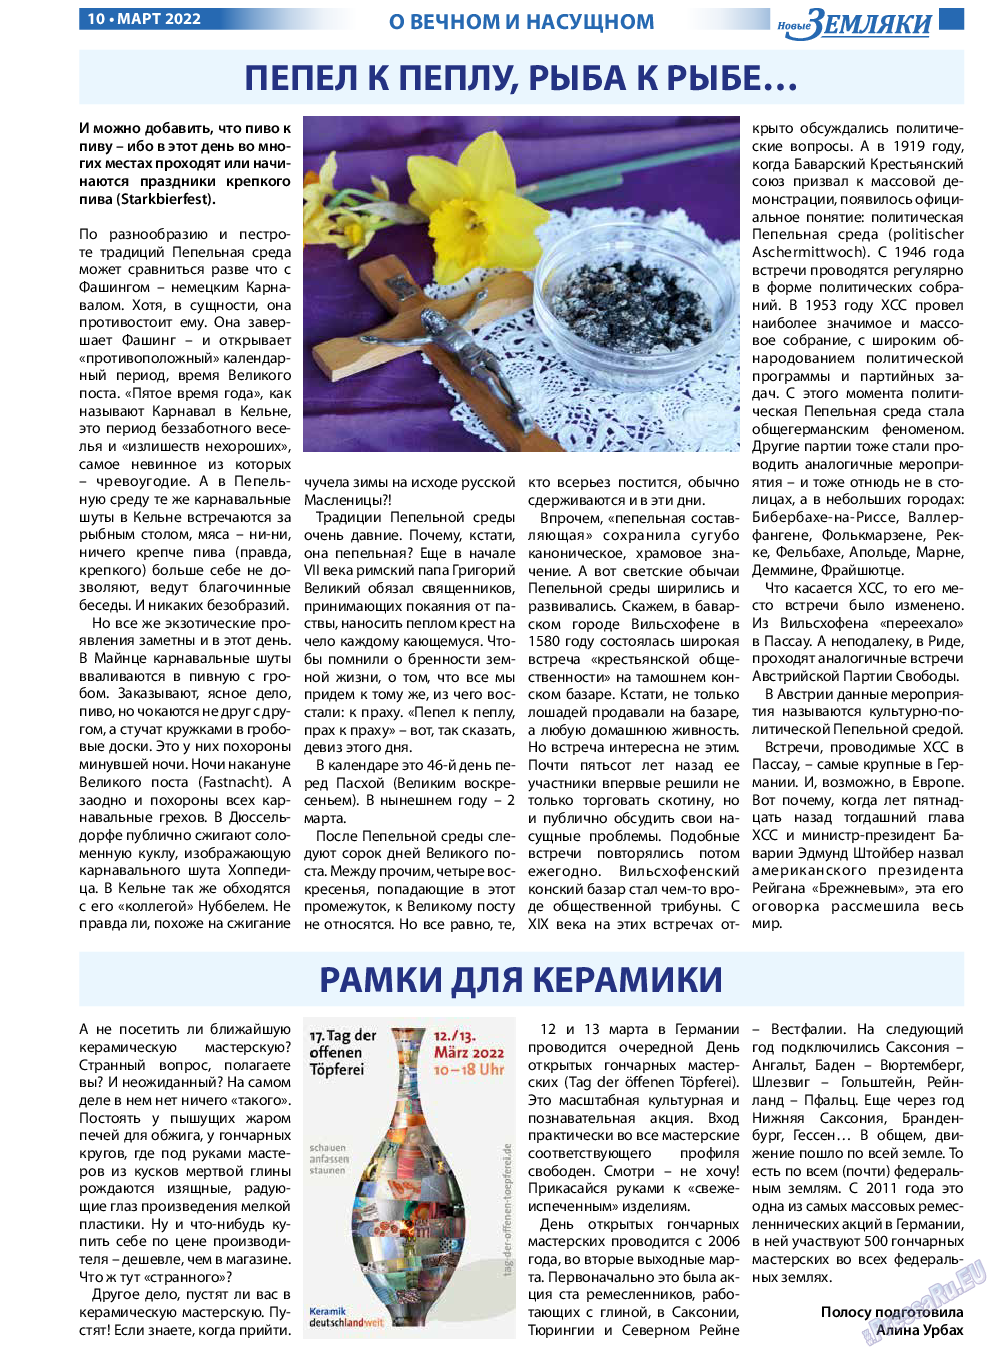 Новые Земляки, газета. 2022 №3 стр.10